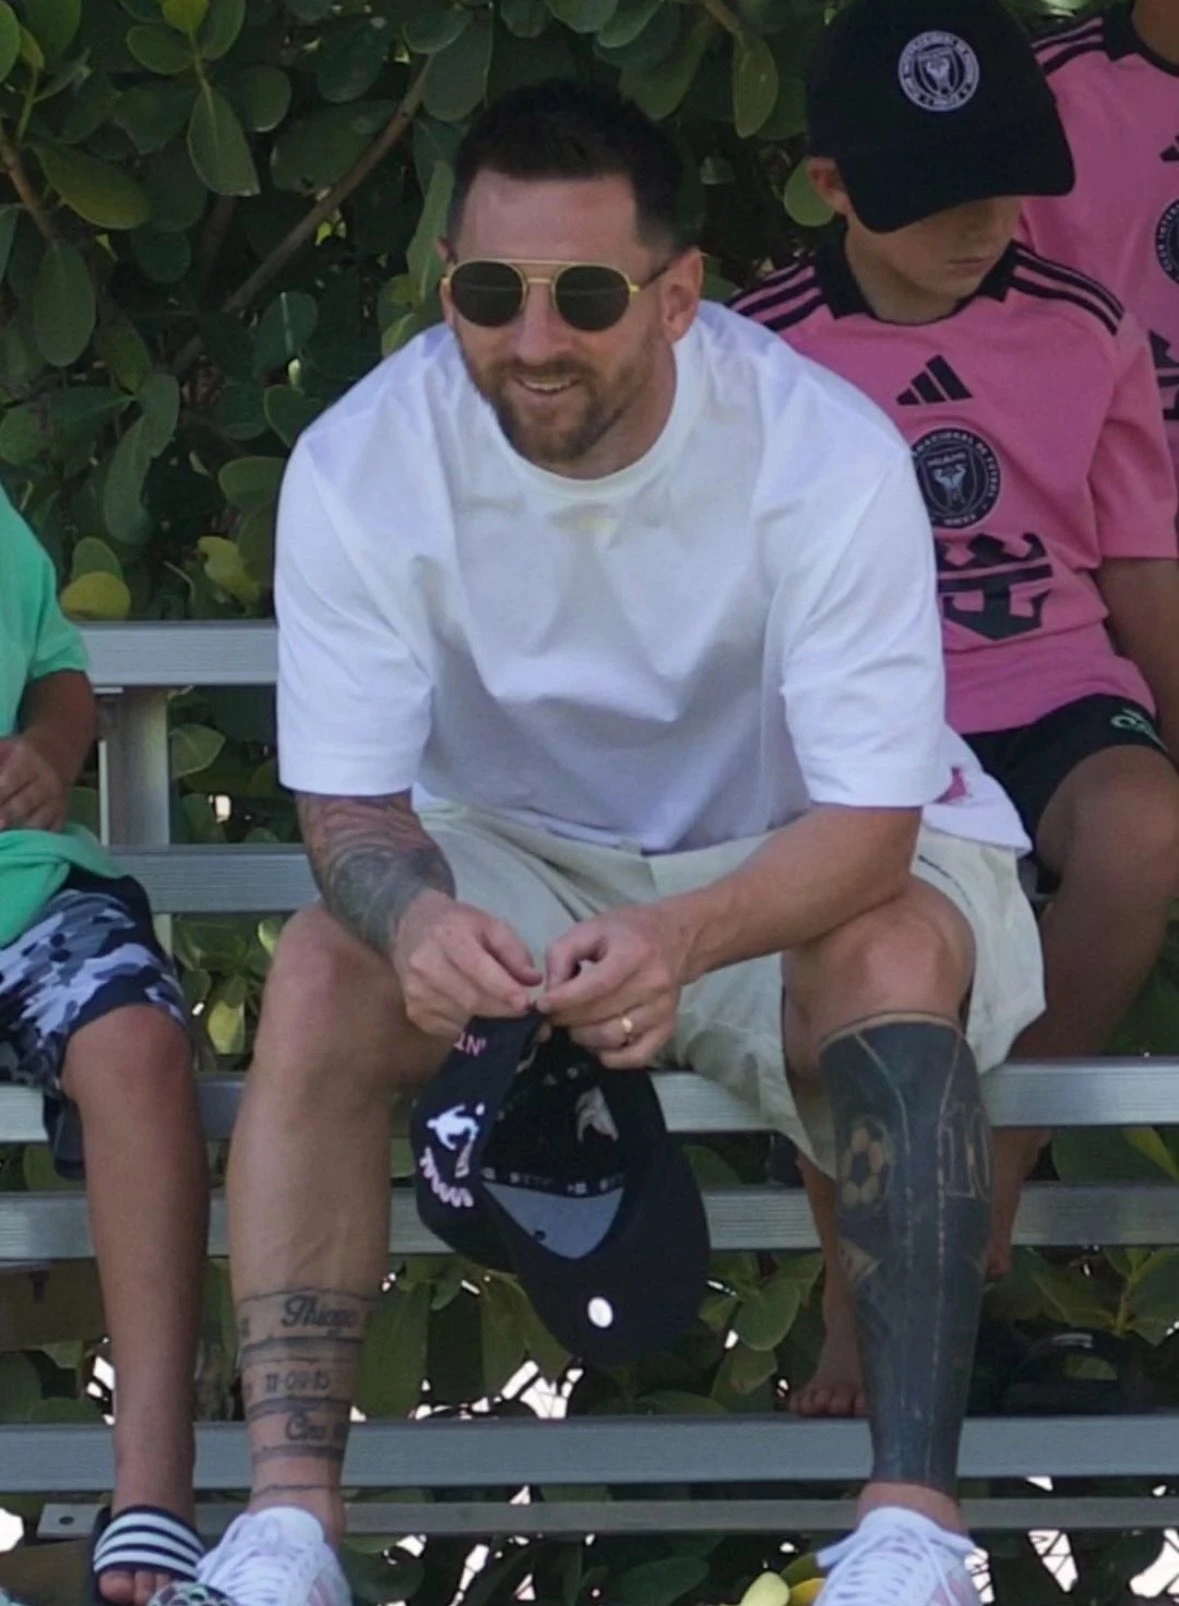 Messi nói gì khi chia sẻ khoảnh khắc hạnh phúc cùng con trai bước ra sân?